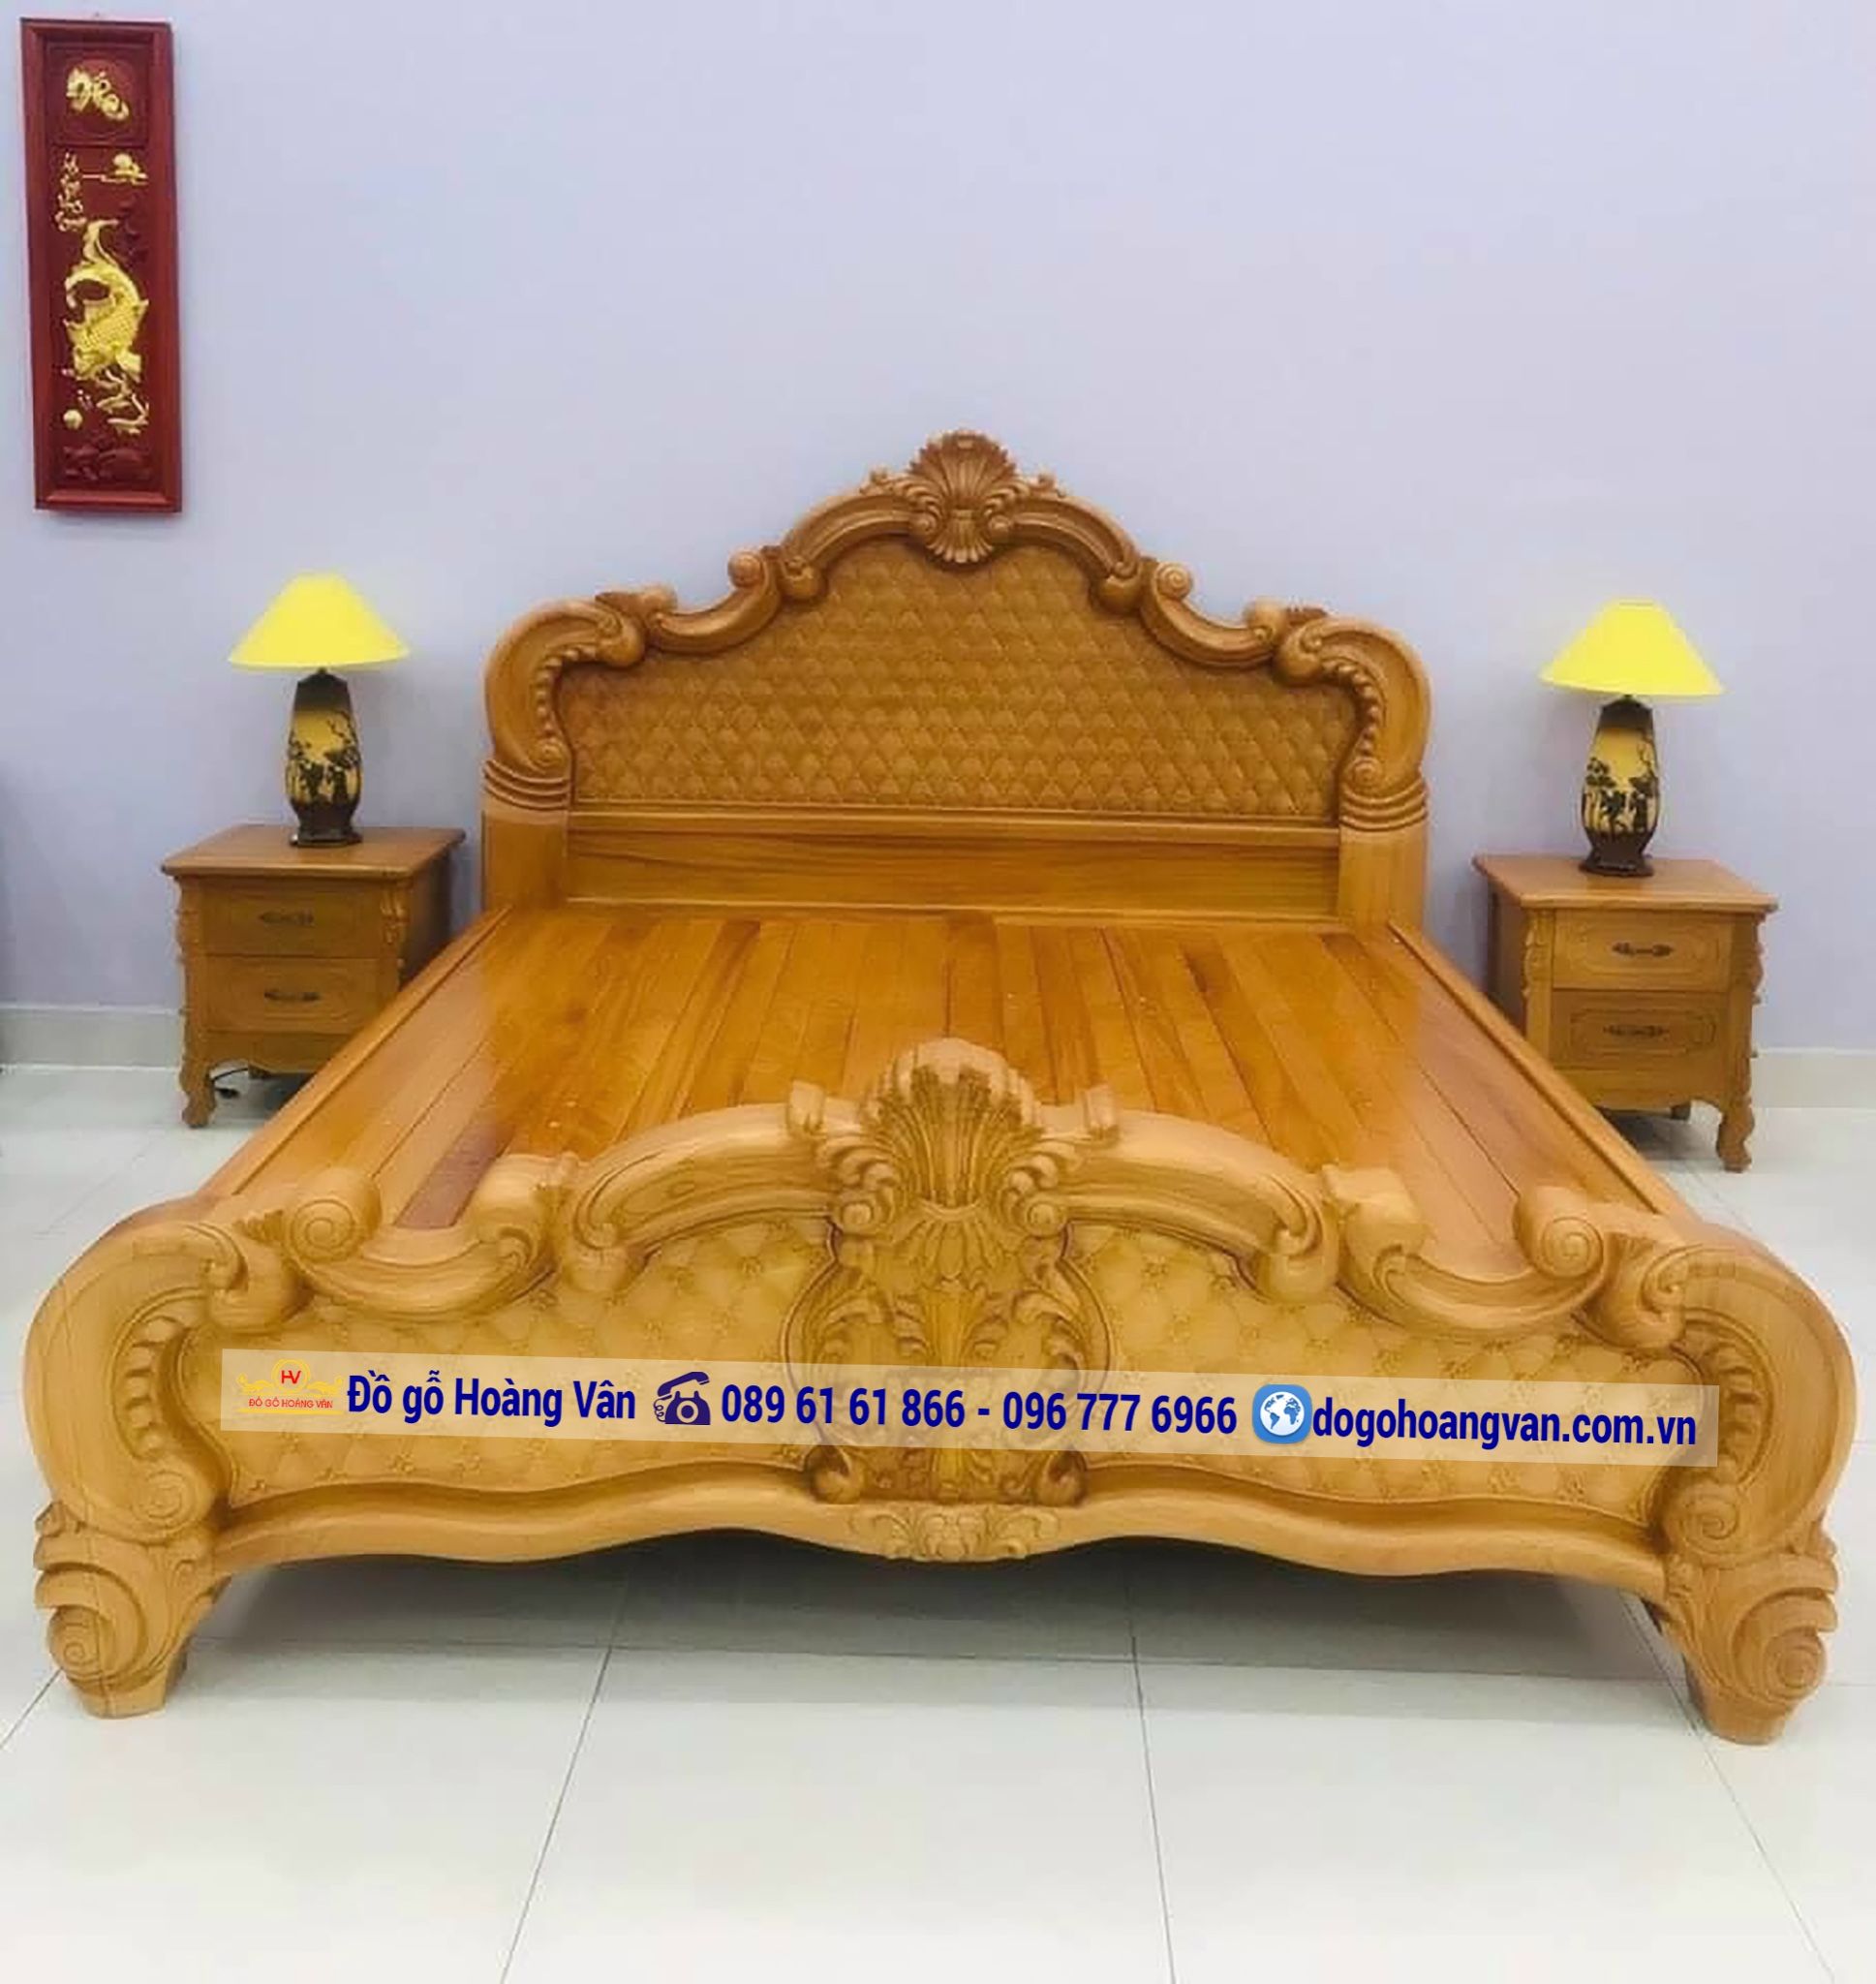 Giường ngủ đẹp gỗ tốt giá rẻ GN139: Bạn đang muốn sở hữu một chiếc giường ngủ đẹp và chất lượng tốt với giá cả phù hợp? Giường ngủ đẹp gỗ tốt giá rẻ GN139 sẽ là lựa chọn tuyệt vời cho bạn. Thiết kế đẹp mắt, chất liệu gỗ bền chắc và giá cả hợp lý, bạn sẽ có một giấc ngủ êm đềm cùng sản phẩm này.